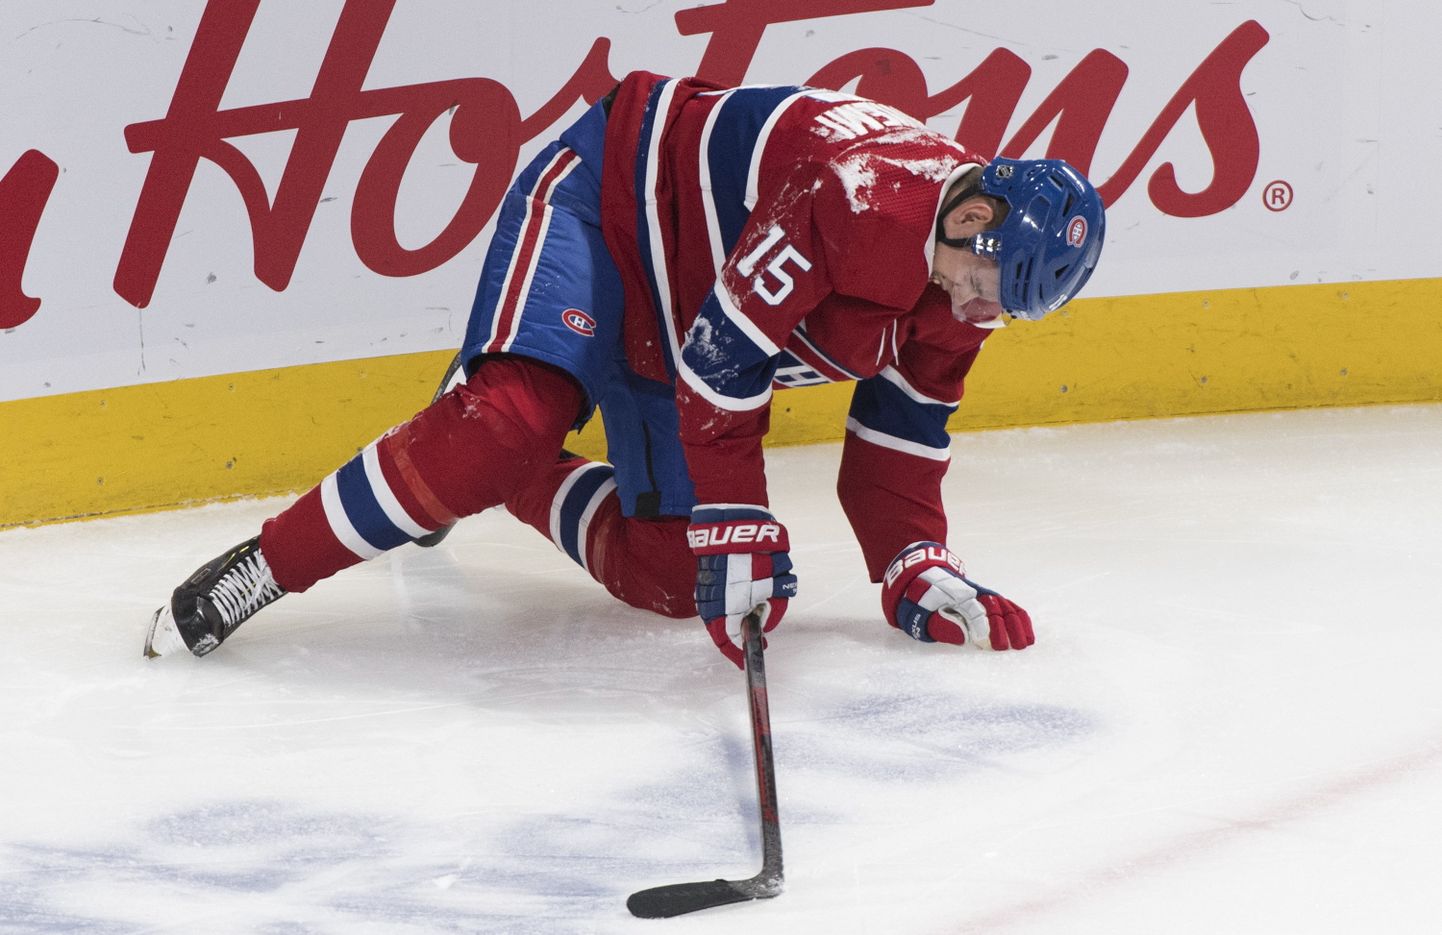 Montreali Canadiensi hokimees Jesperi Kotkaniemi püüdis pärast venelase Zadorovi tapvat taklamist küll ise püsti saada, kuid edutult.